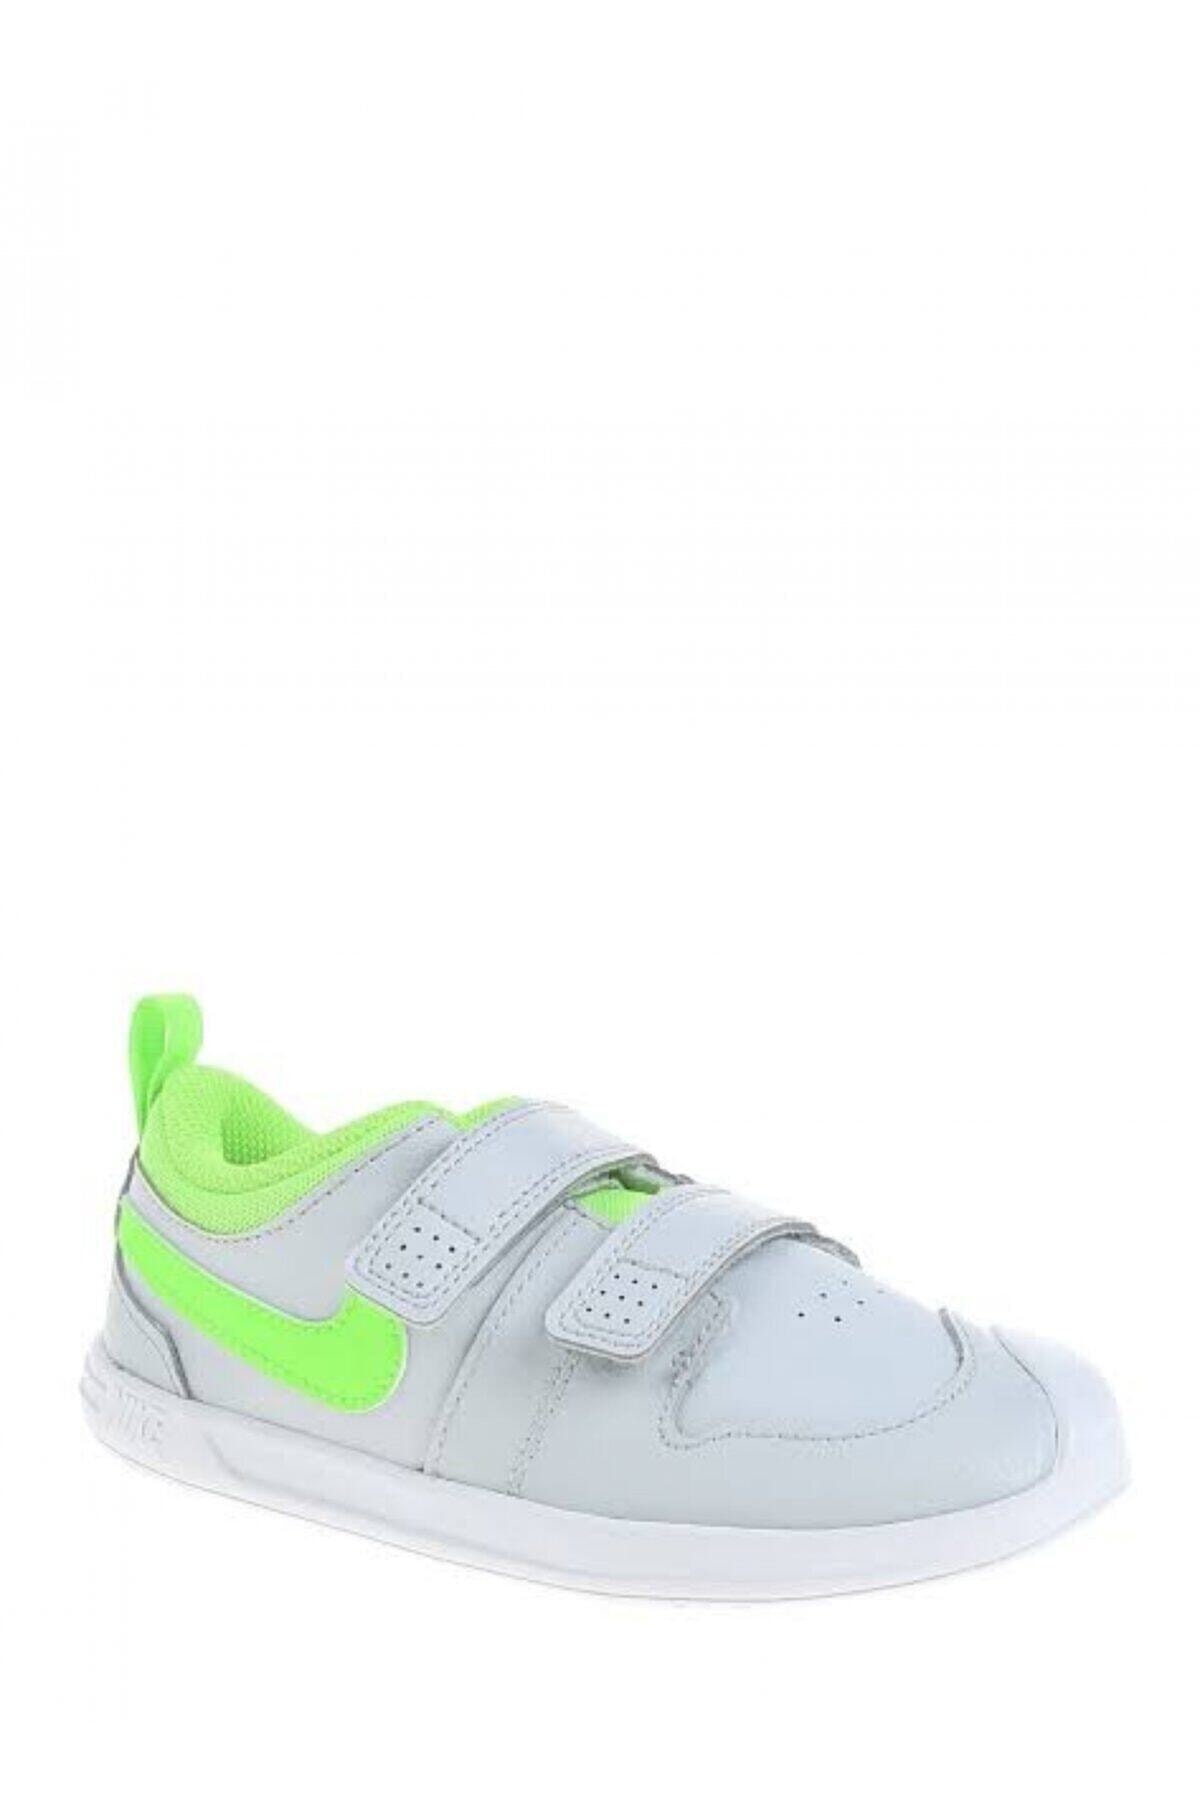 Nike Ar4162-002 Pıco 5 Bebek Tenis Ayakkabı